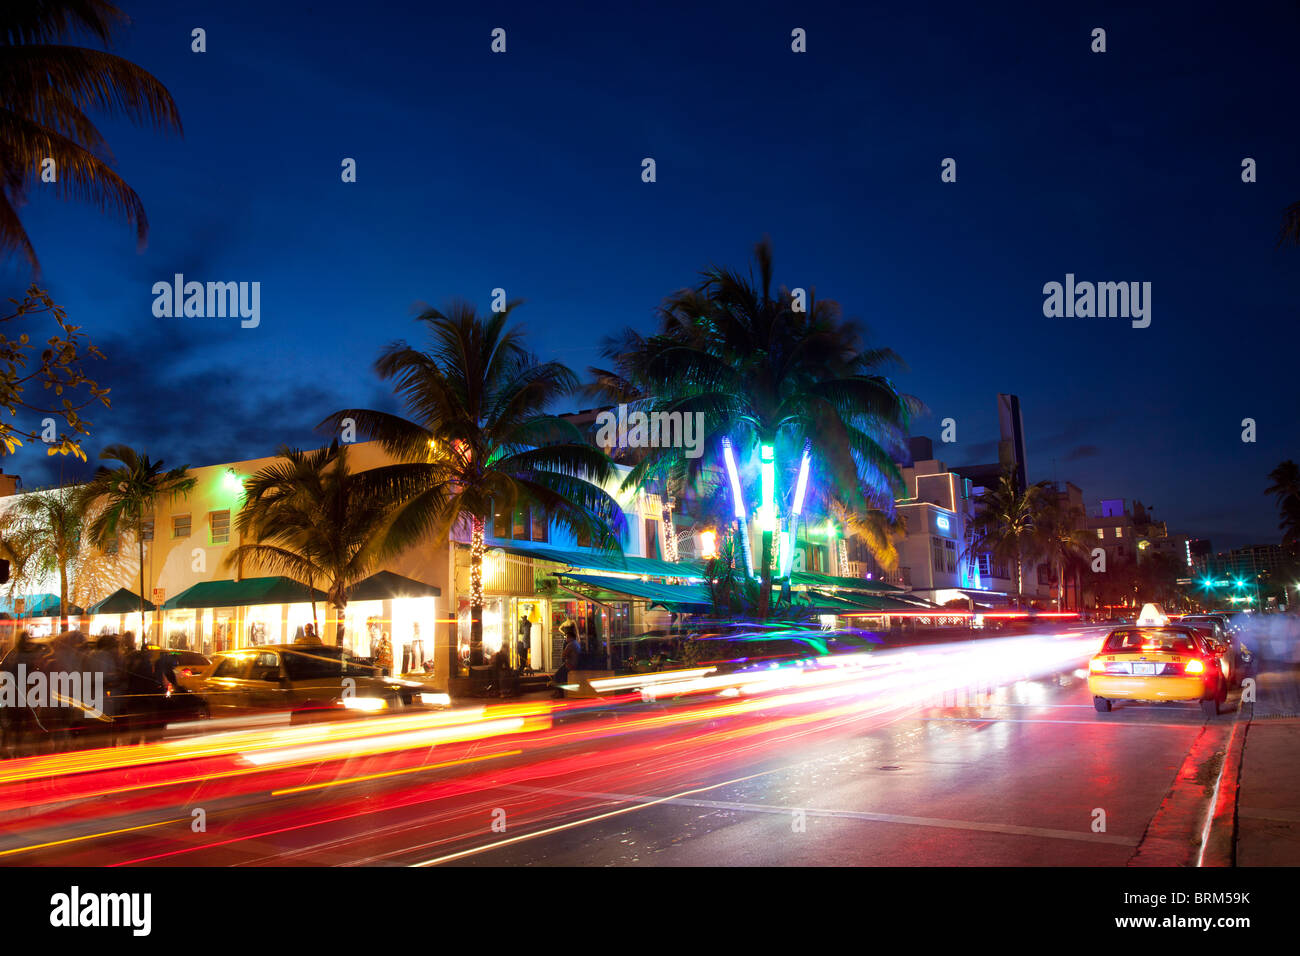 La nuit dans le célèbre quartier art déco de South Beach, Ocean Drive à Miami Floride United States Banque D'Images